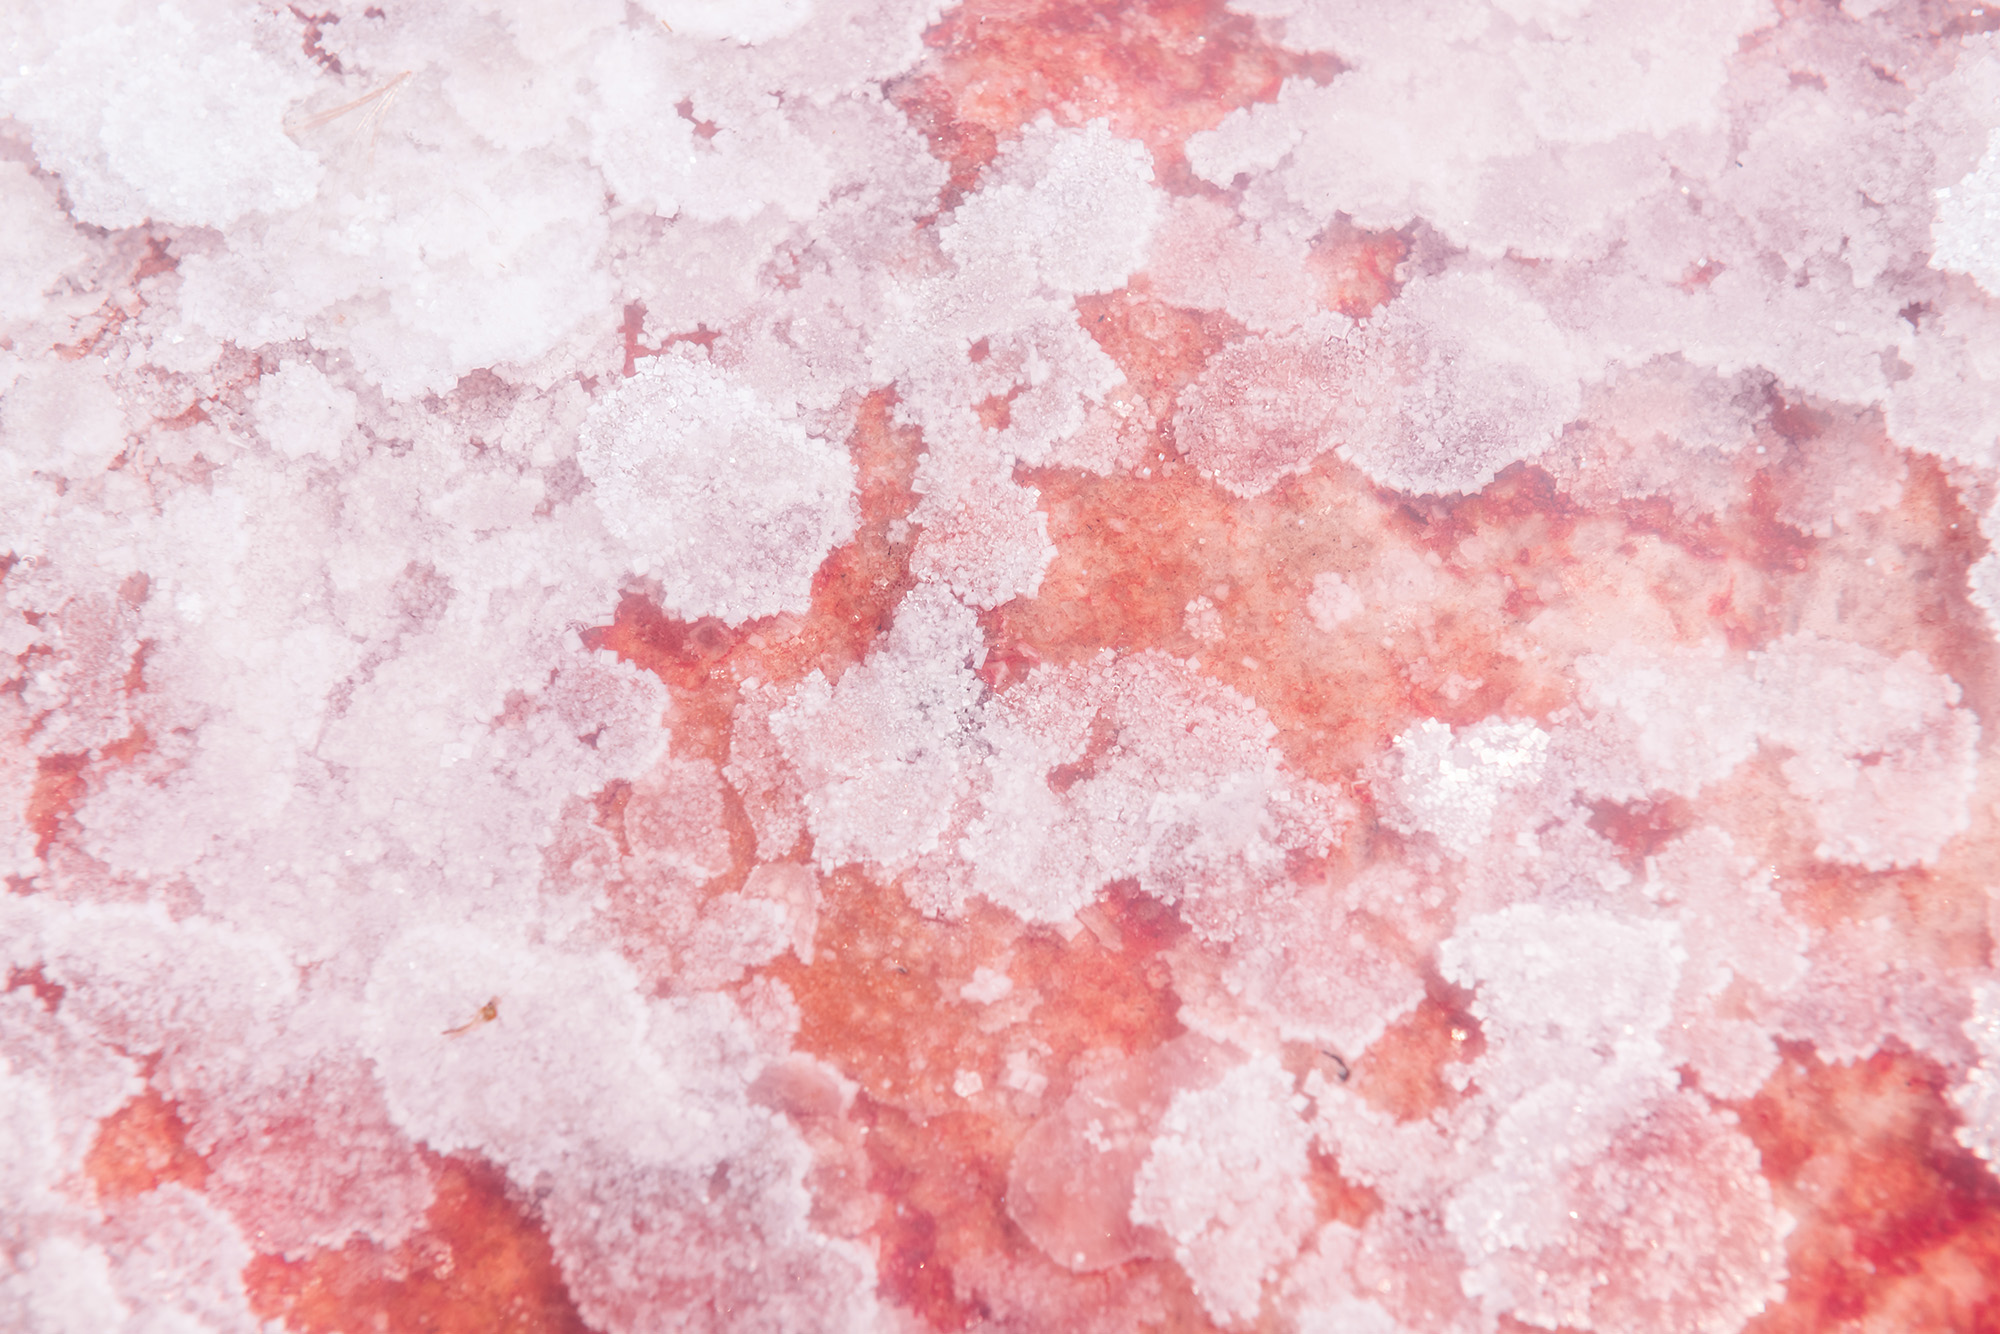 Крымская розовая соль внешне очень похожа на гималайскую. Но она морская, а не каменная. Упаковка такой соли весом 750 г стоит 307 ₽. Фото: Olga Gavrilova / Shutterstock